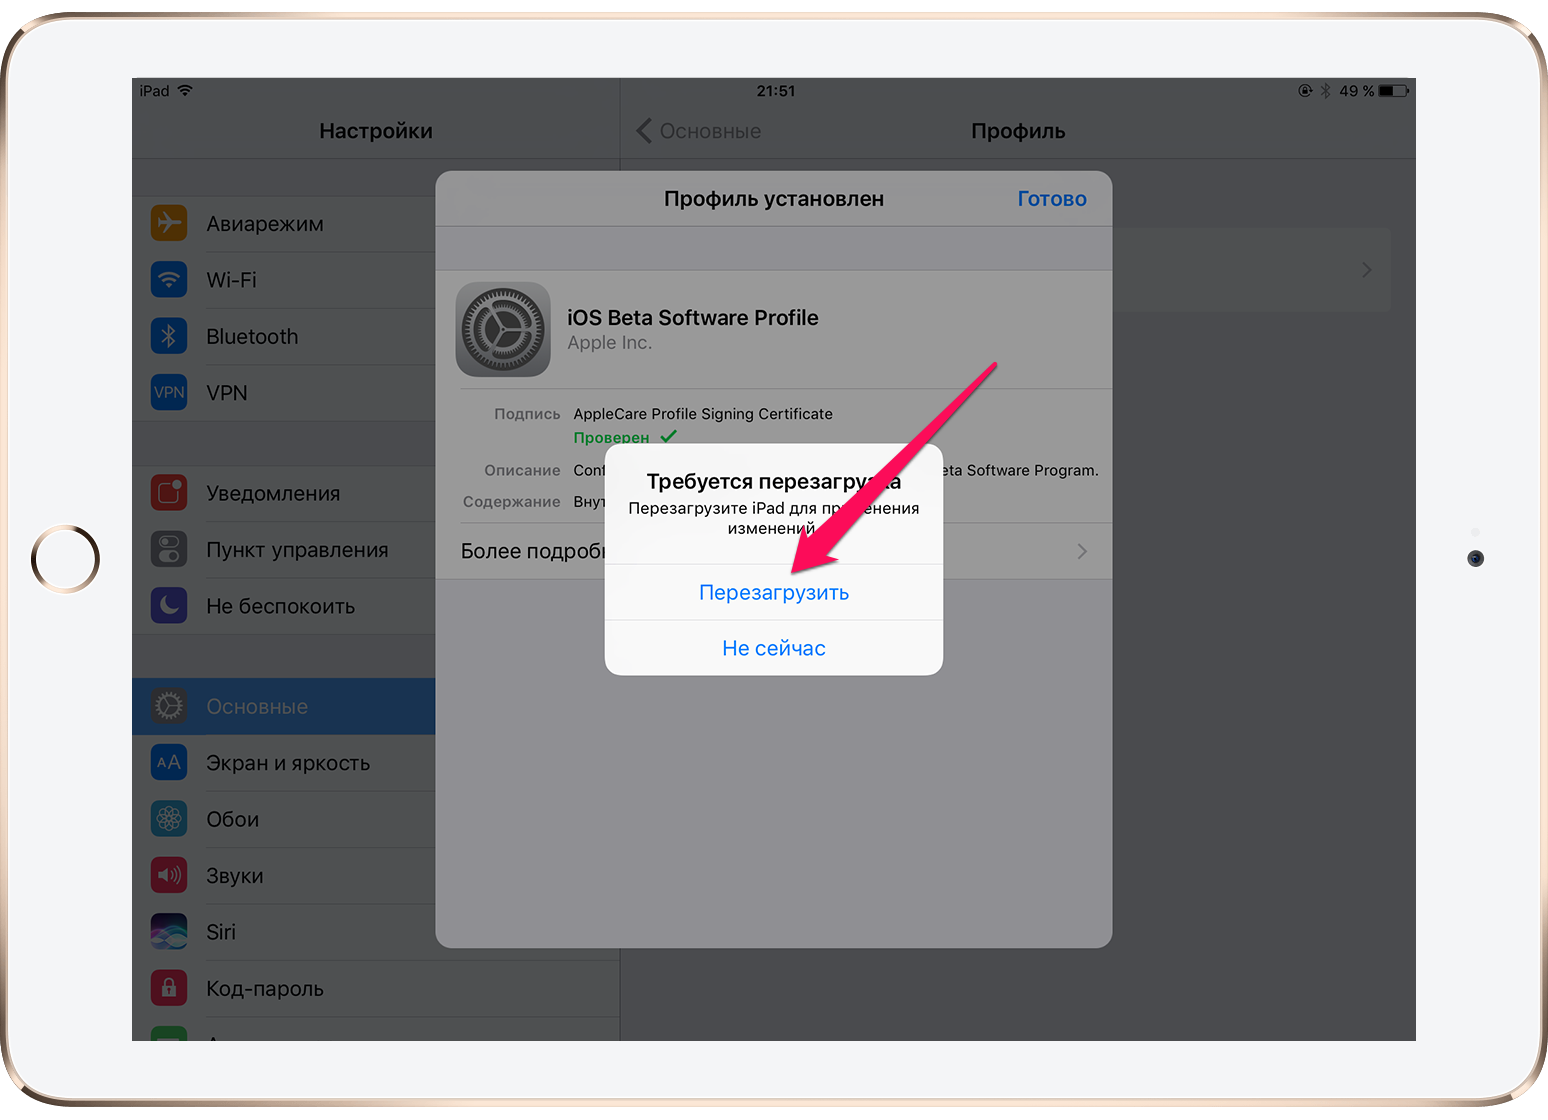 Вышла GM версия iOS 11 — как установить